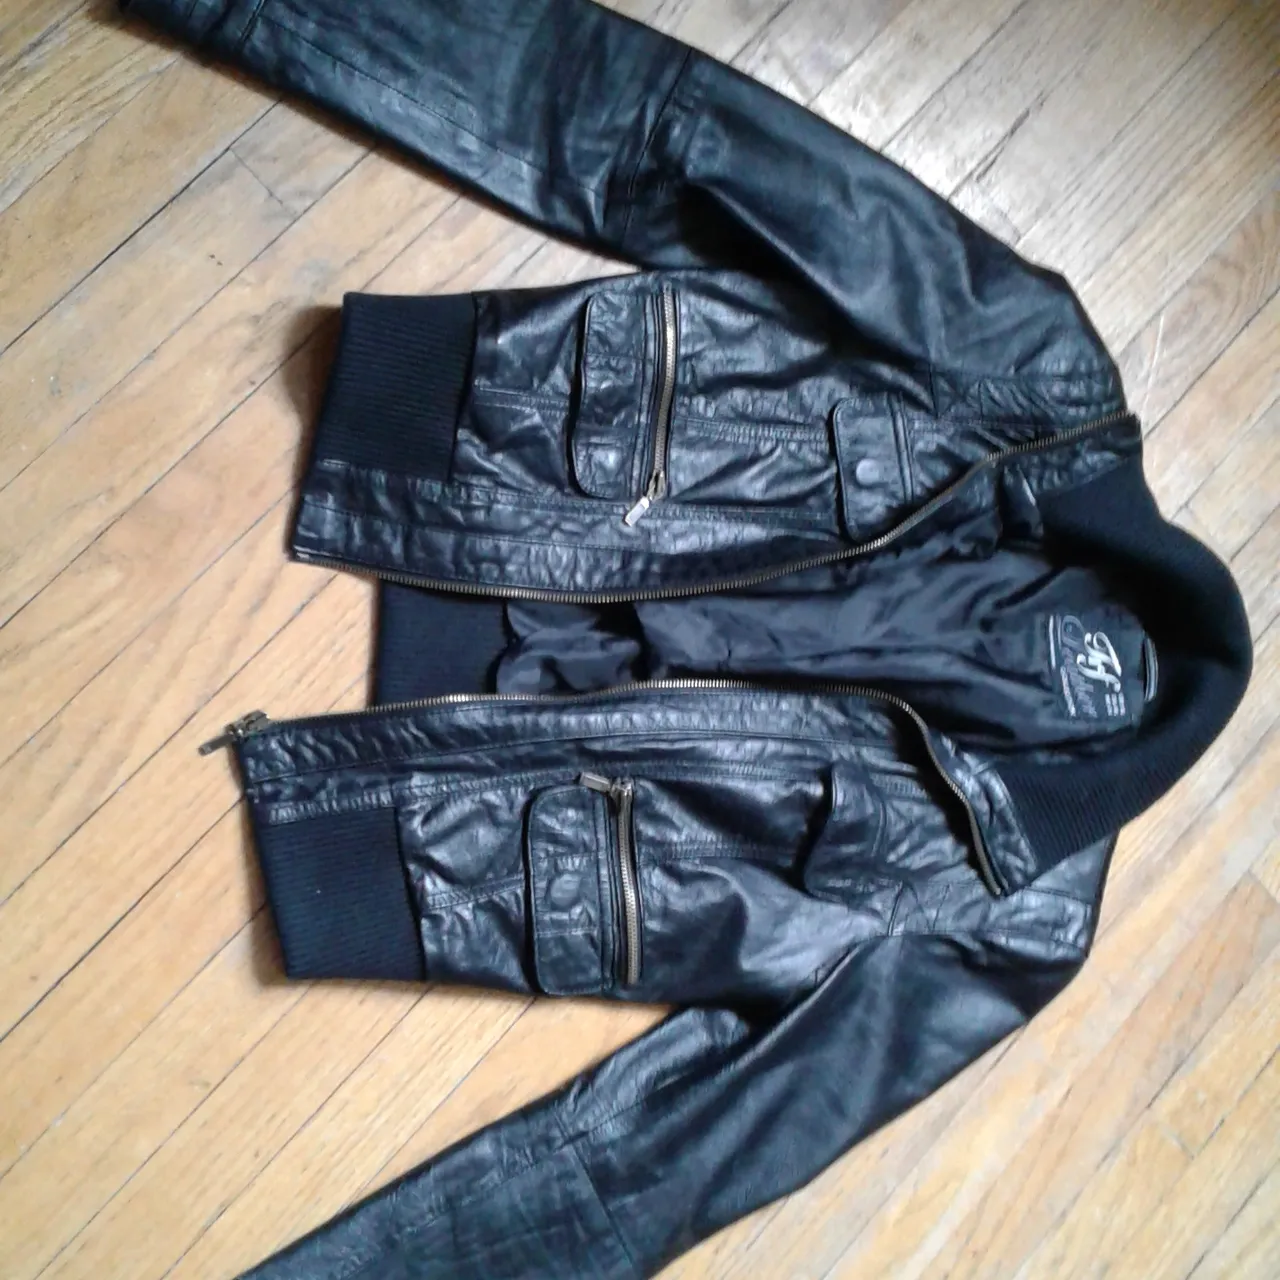 Black Leather Jacket photo 1